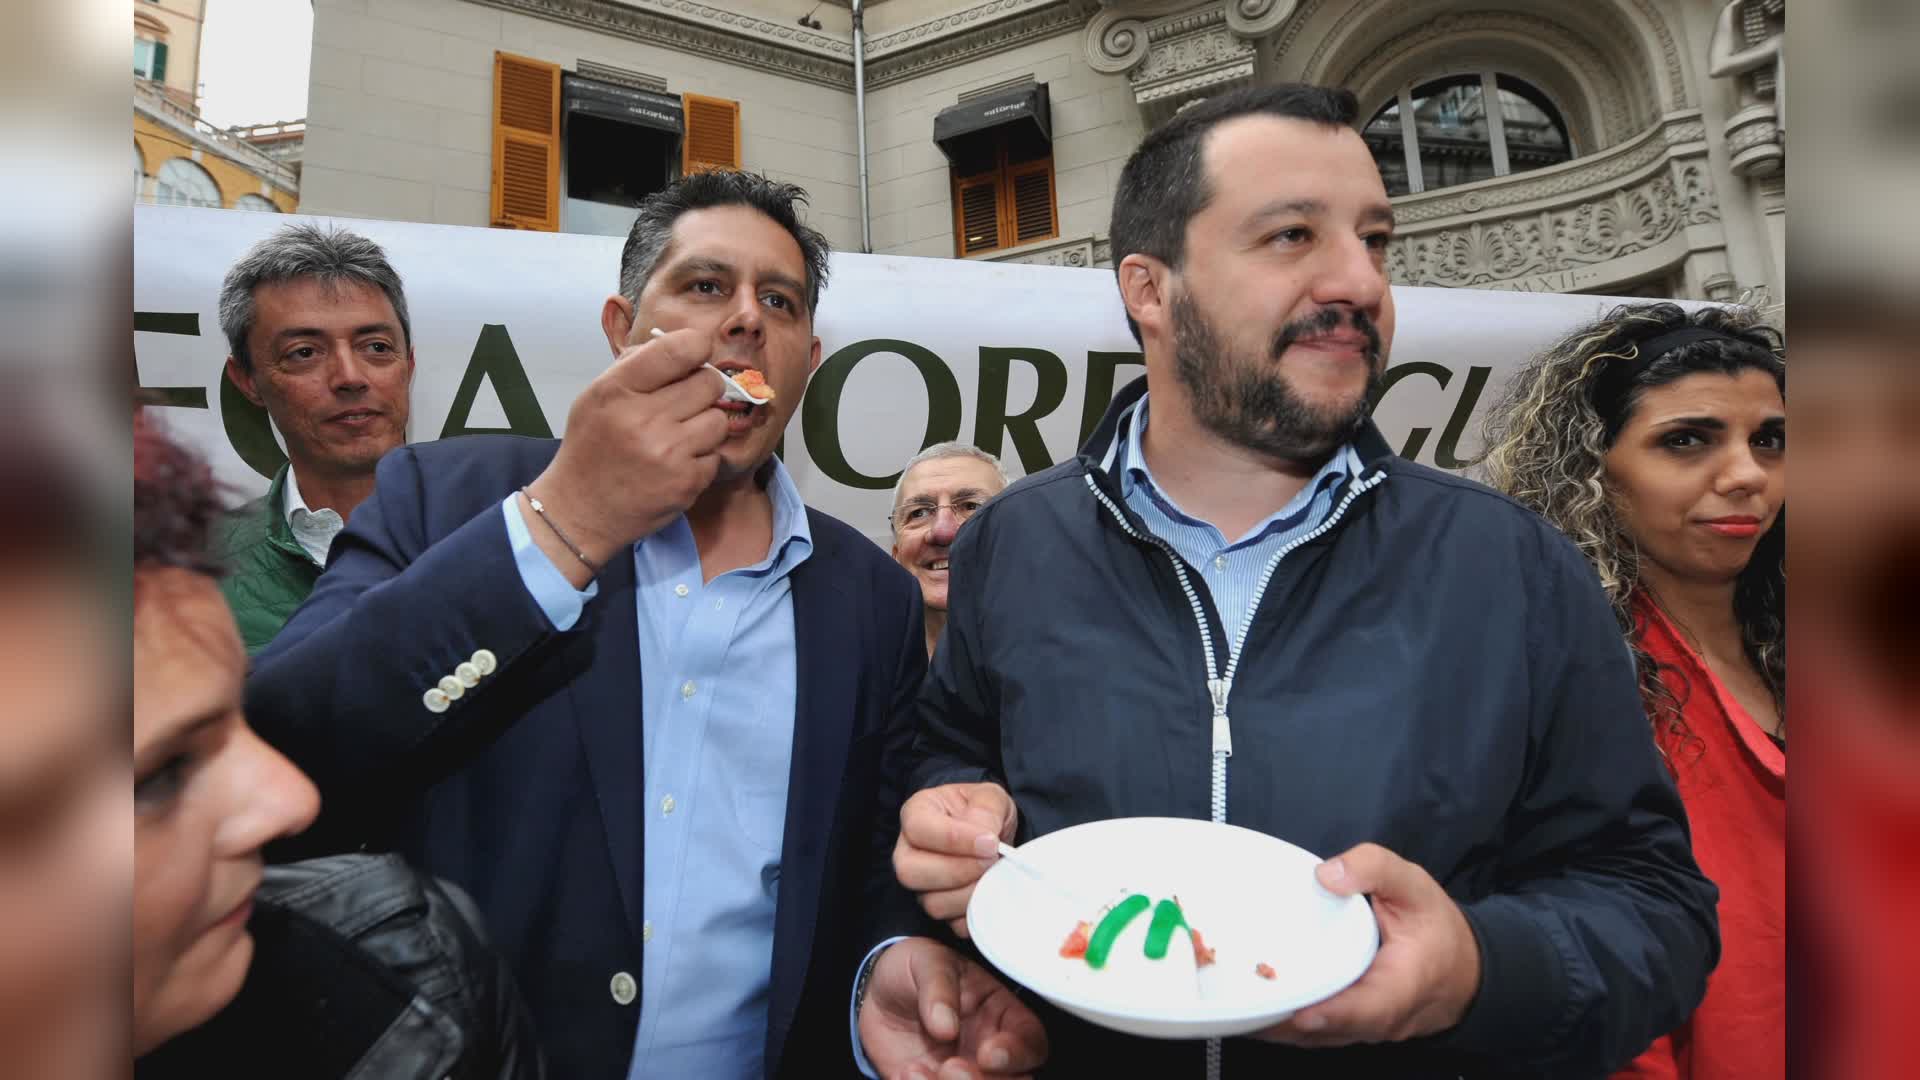 Caso Toti, Salvini: "Penso sia innocente, mi chiedo se fosse necessario arrestarlo ora"